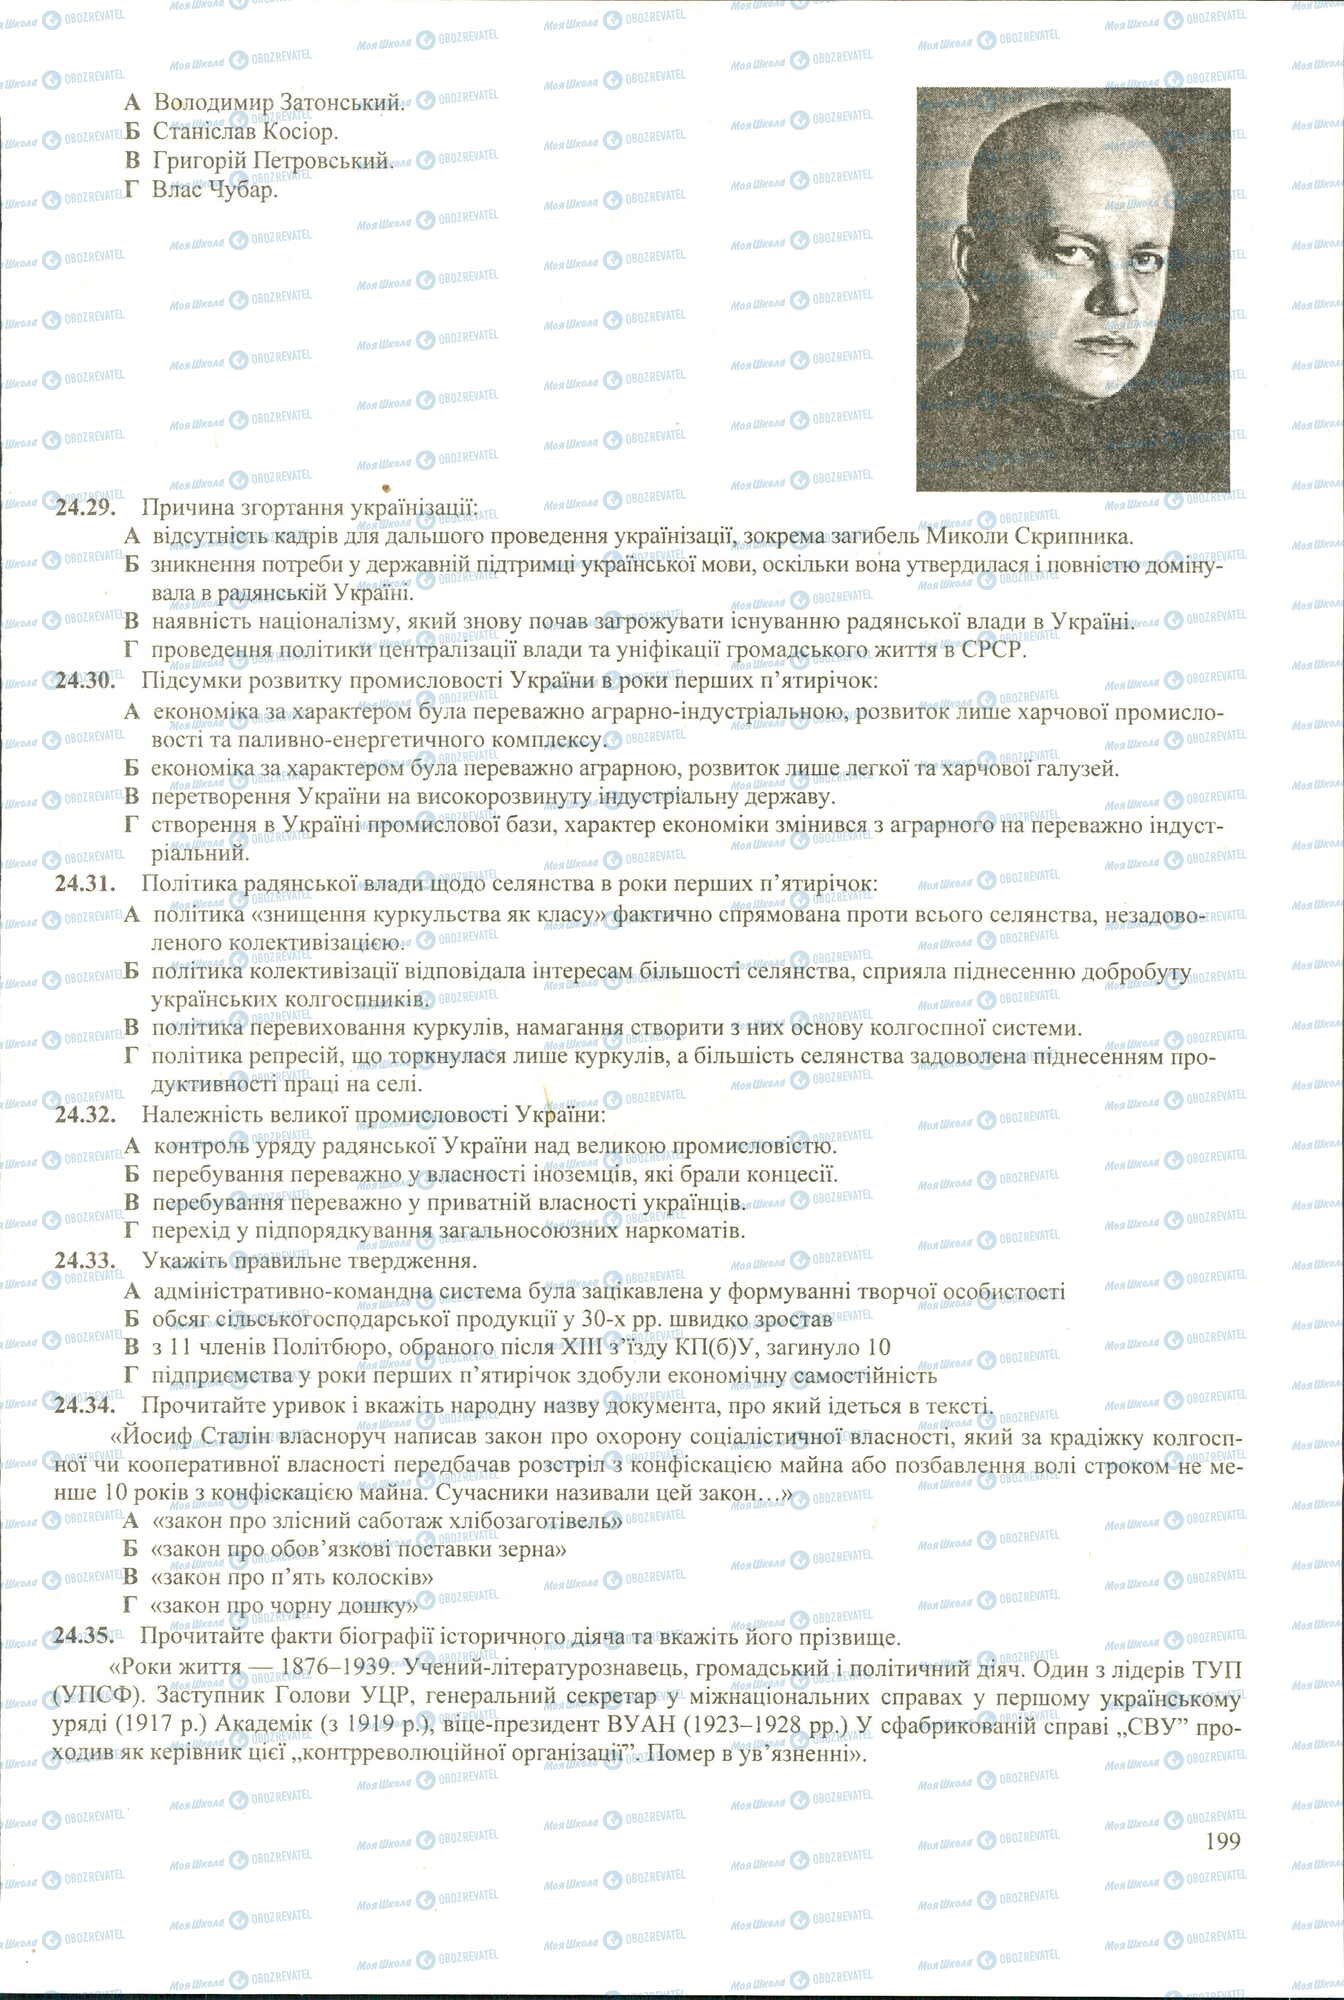 ЗНО История Украины 11 класс страница 29-35